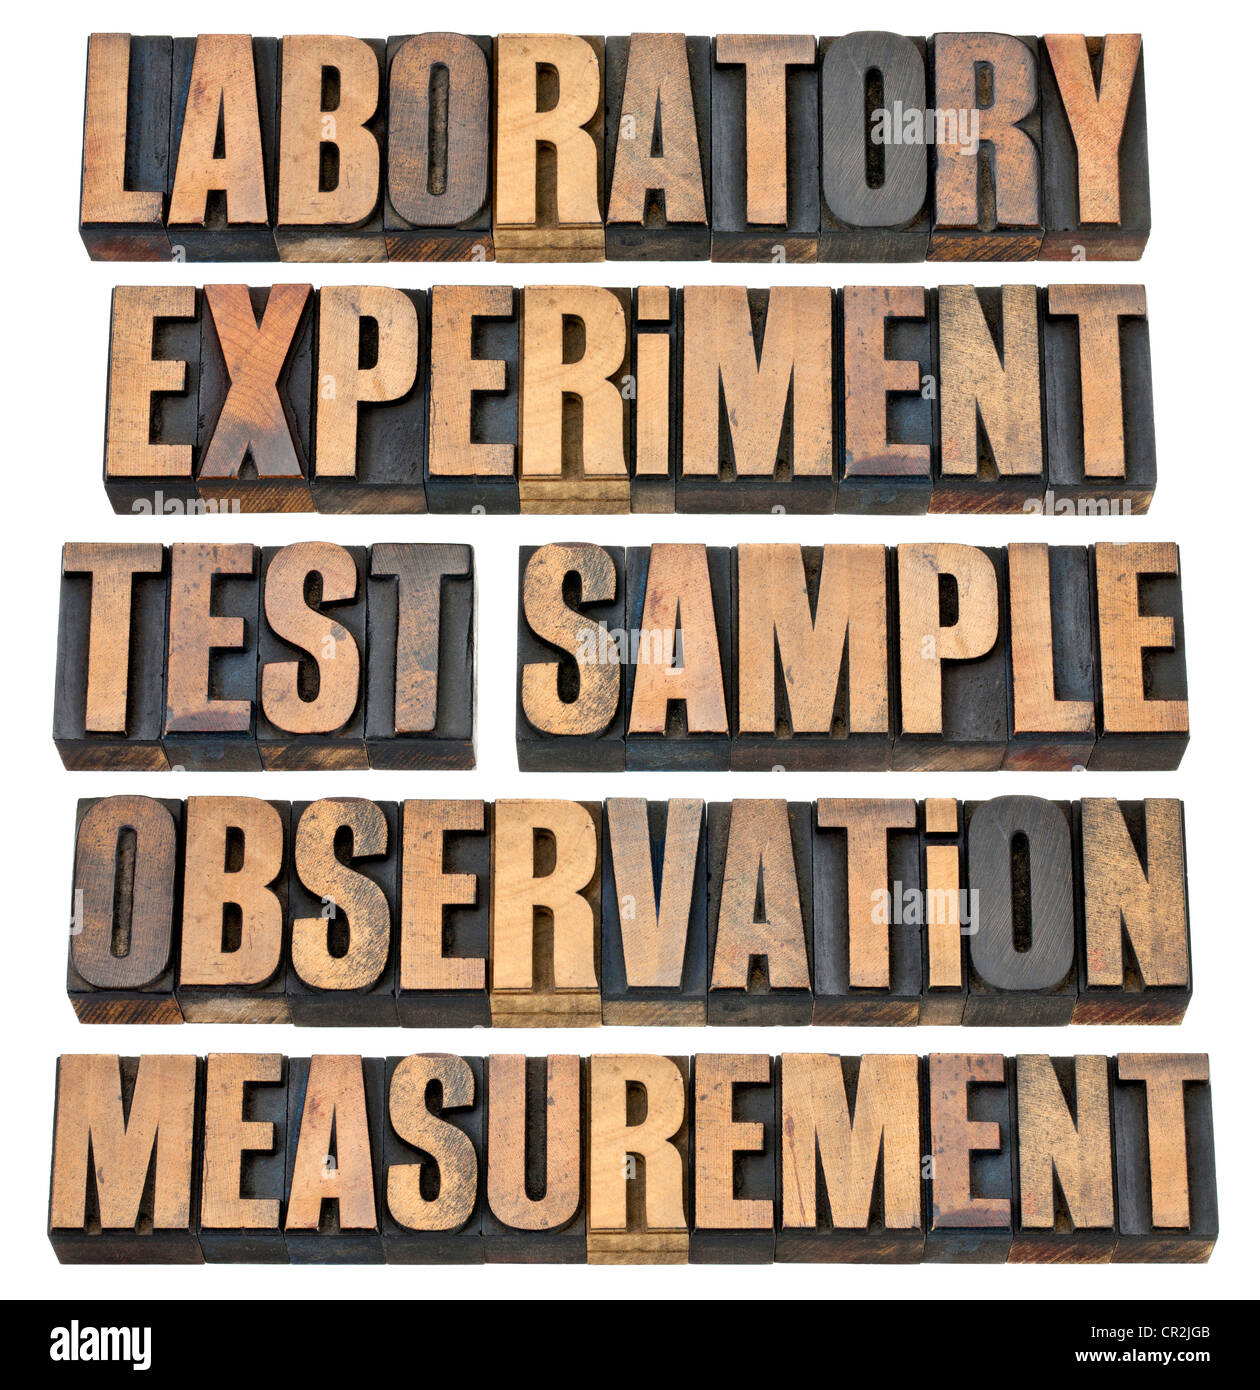 Un collage de palabras relacionadas a la investigación experimental - laboratorio, experimentar, probar, probar la observación, la medición Foto de stock